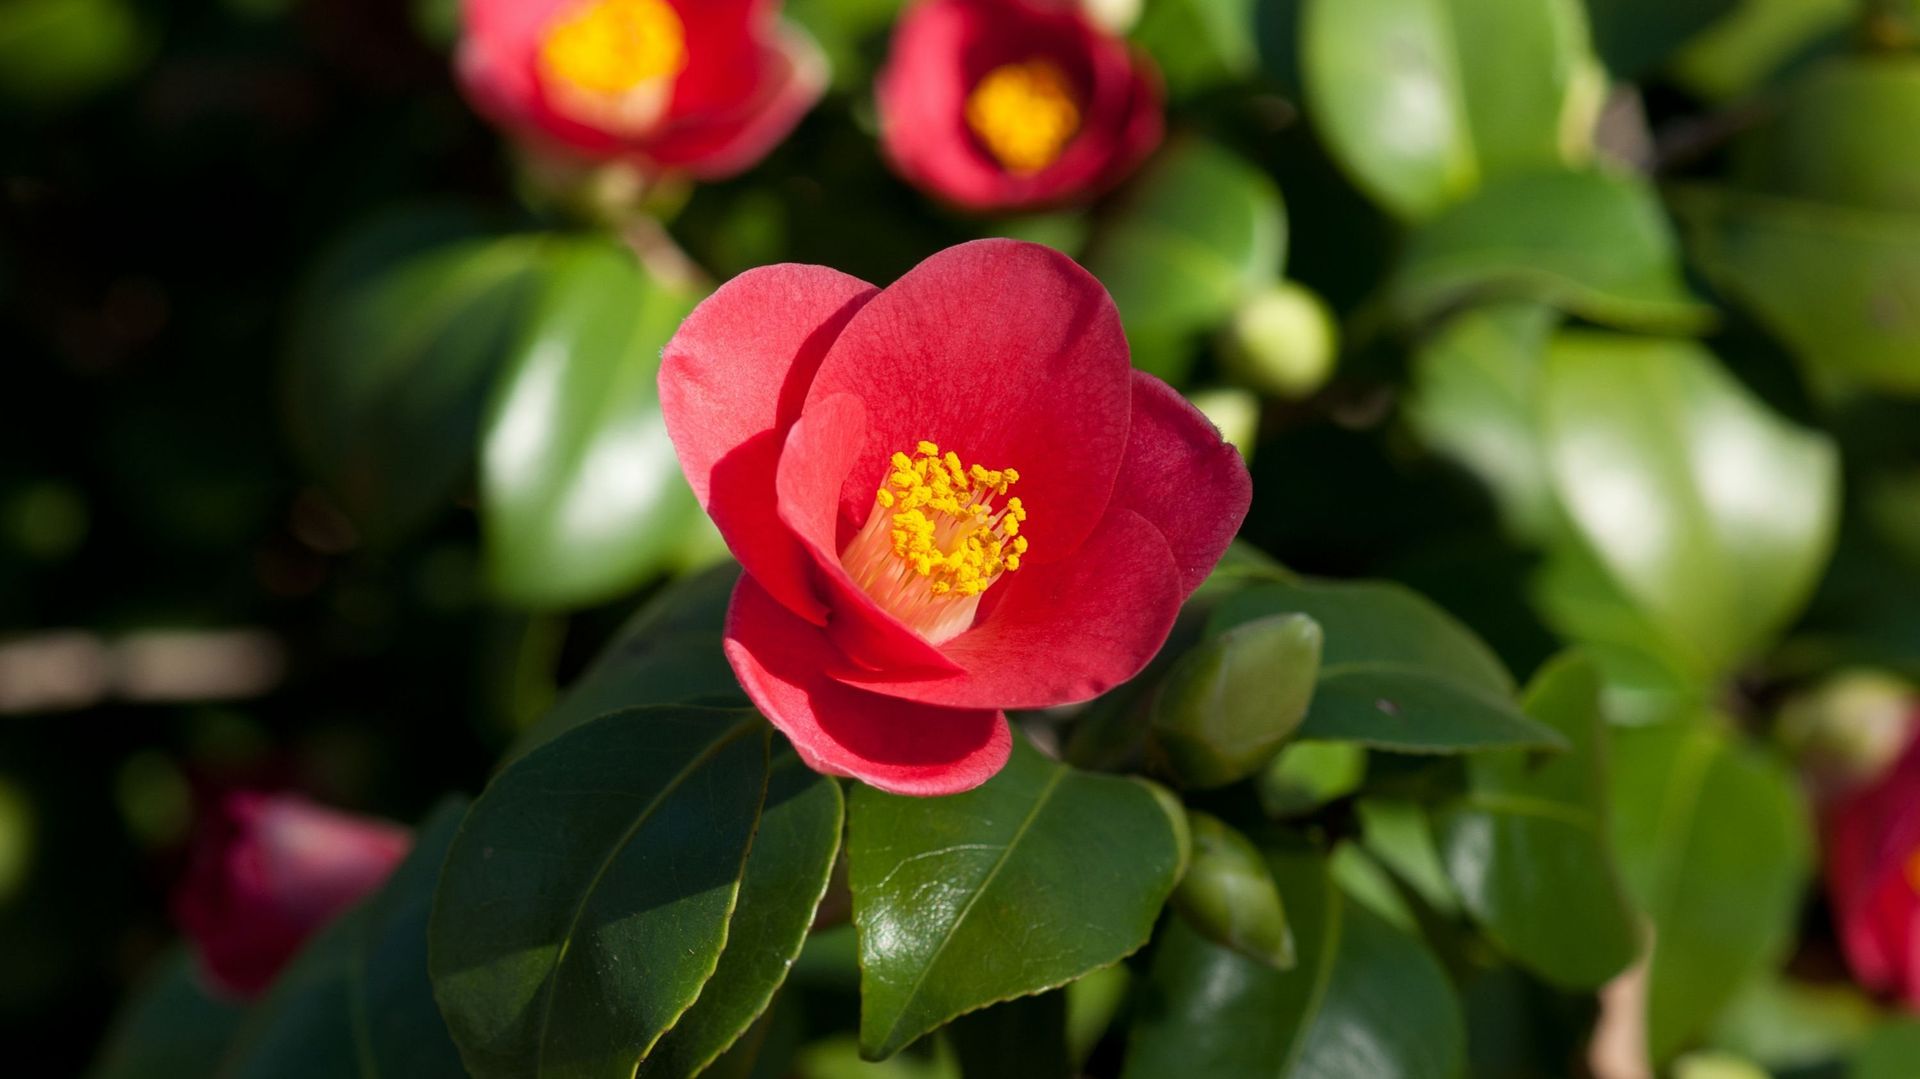 Au Japon, le camélia – Camellia japonica – s’appelle "tsubaki" et est symbole d’amitié, d’élégance et d’harmonie. Sa fleur rouge est devenue l’emblème des samouraïs